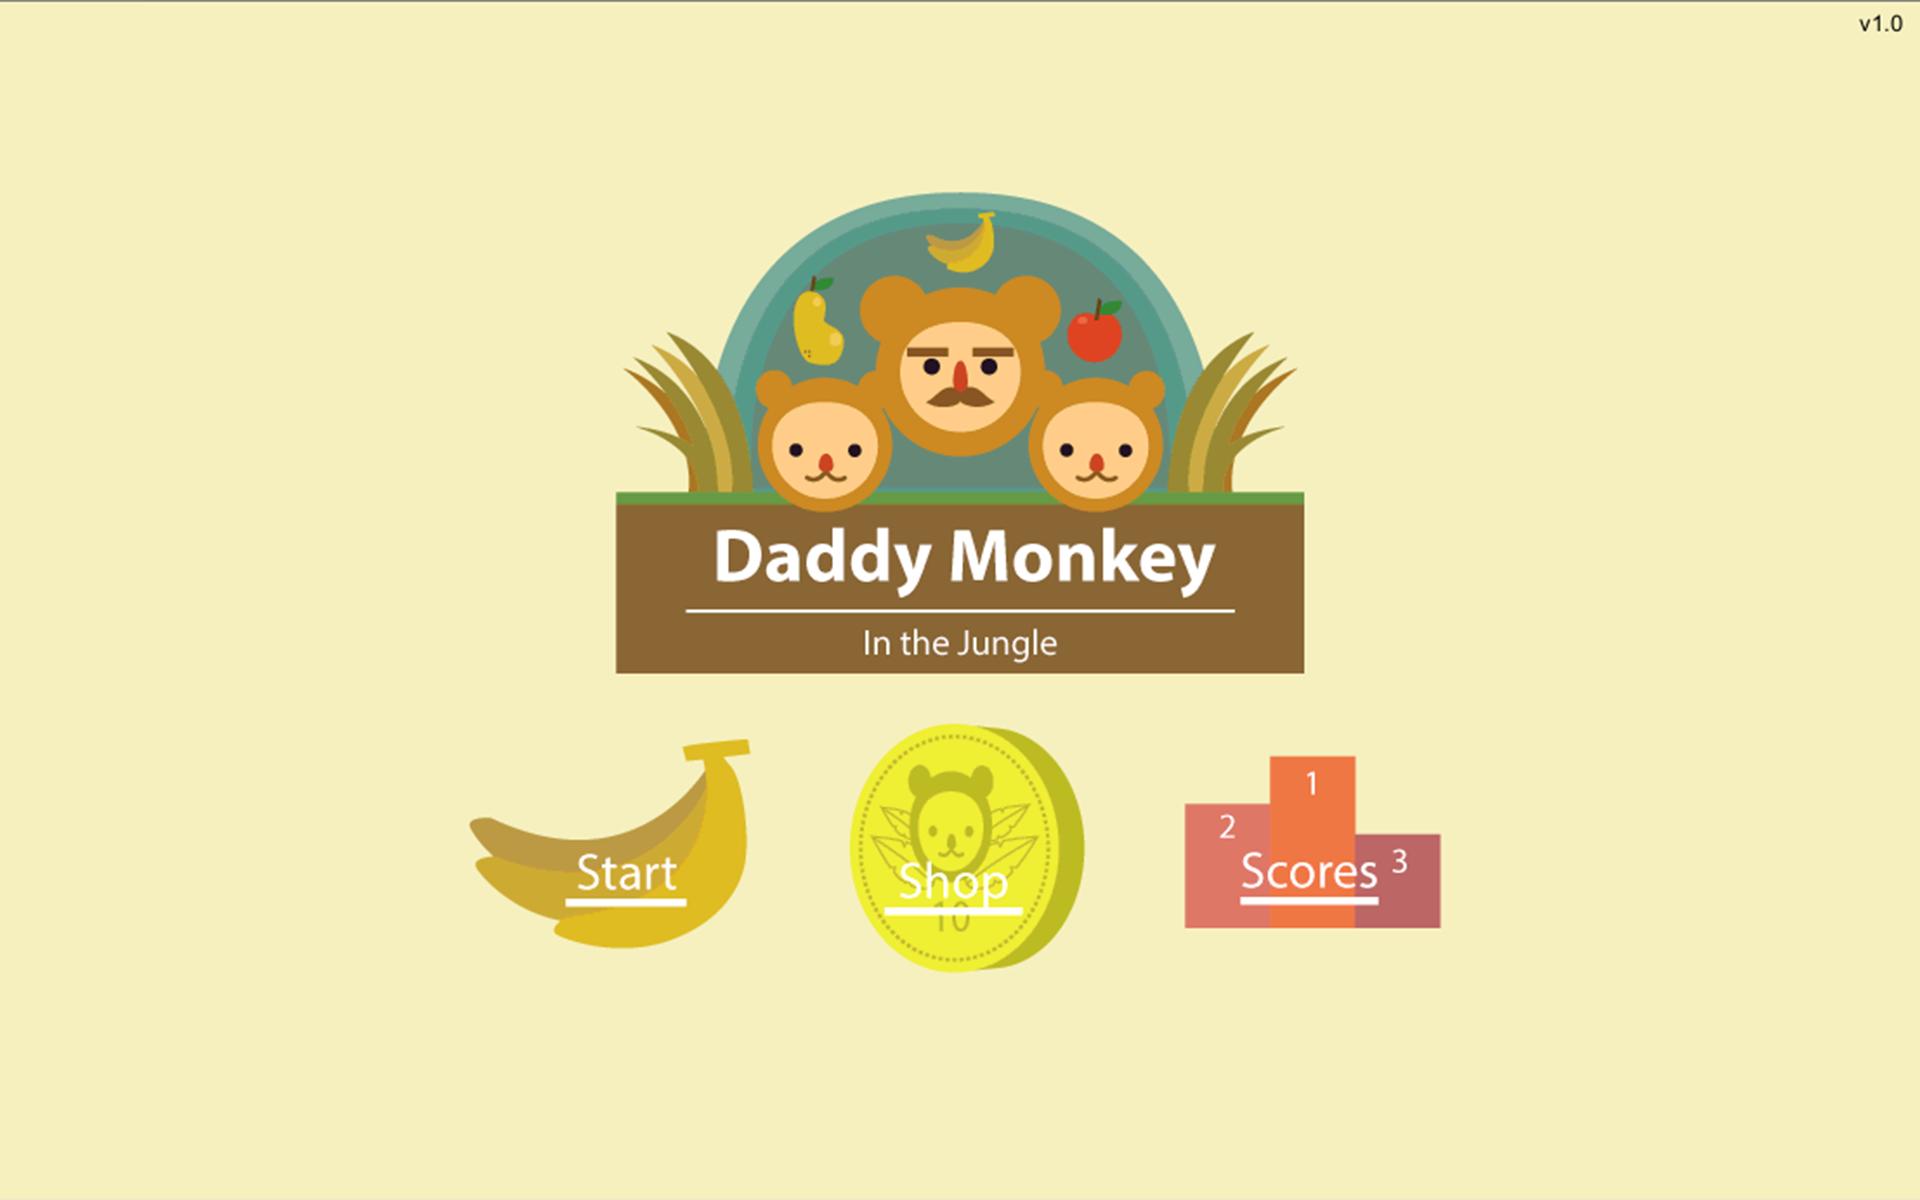 Download daddy. Daddy Monkey. Daddy Monkey рисунок. Dad Monkey meme.